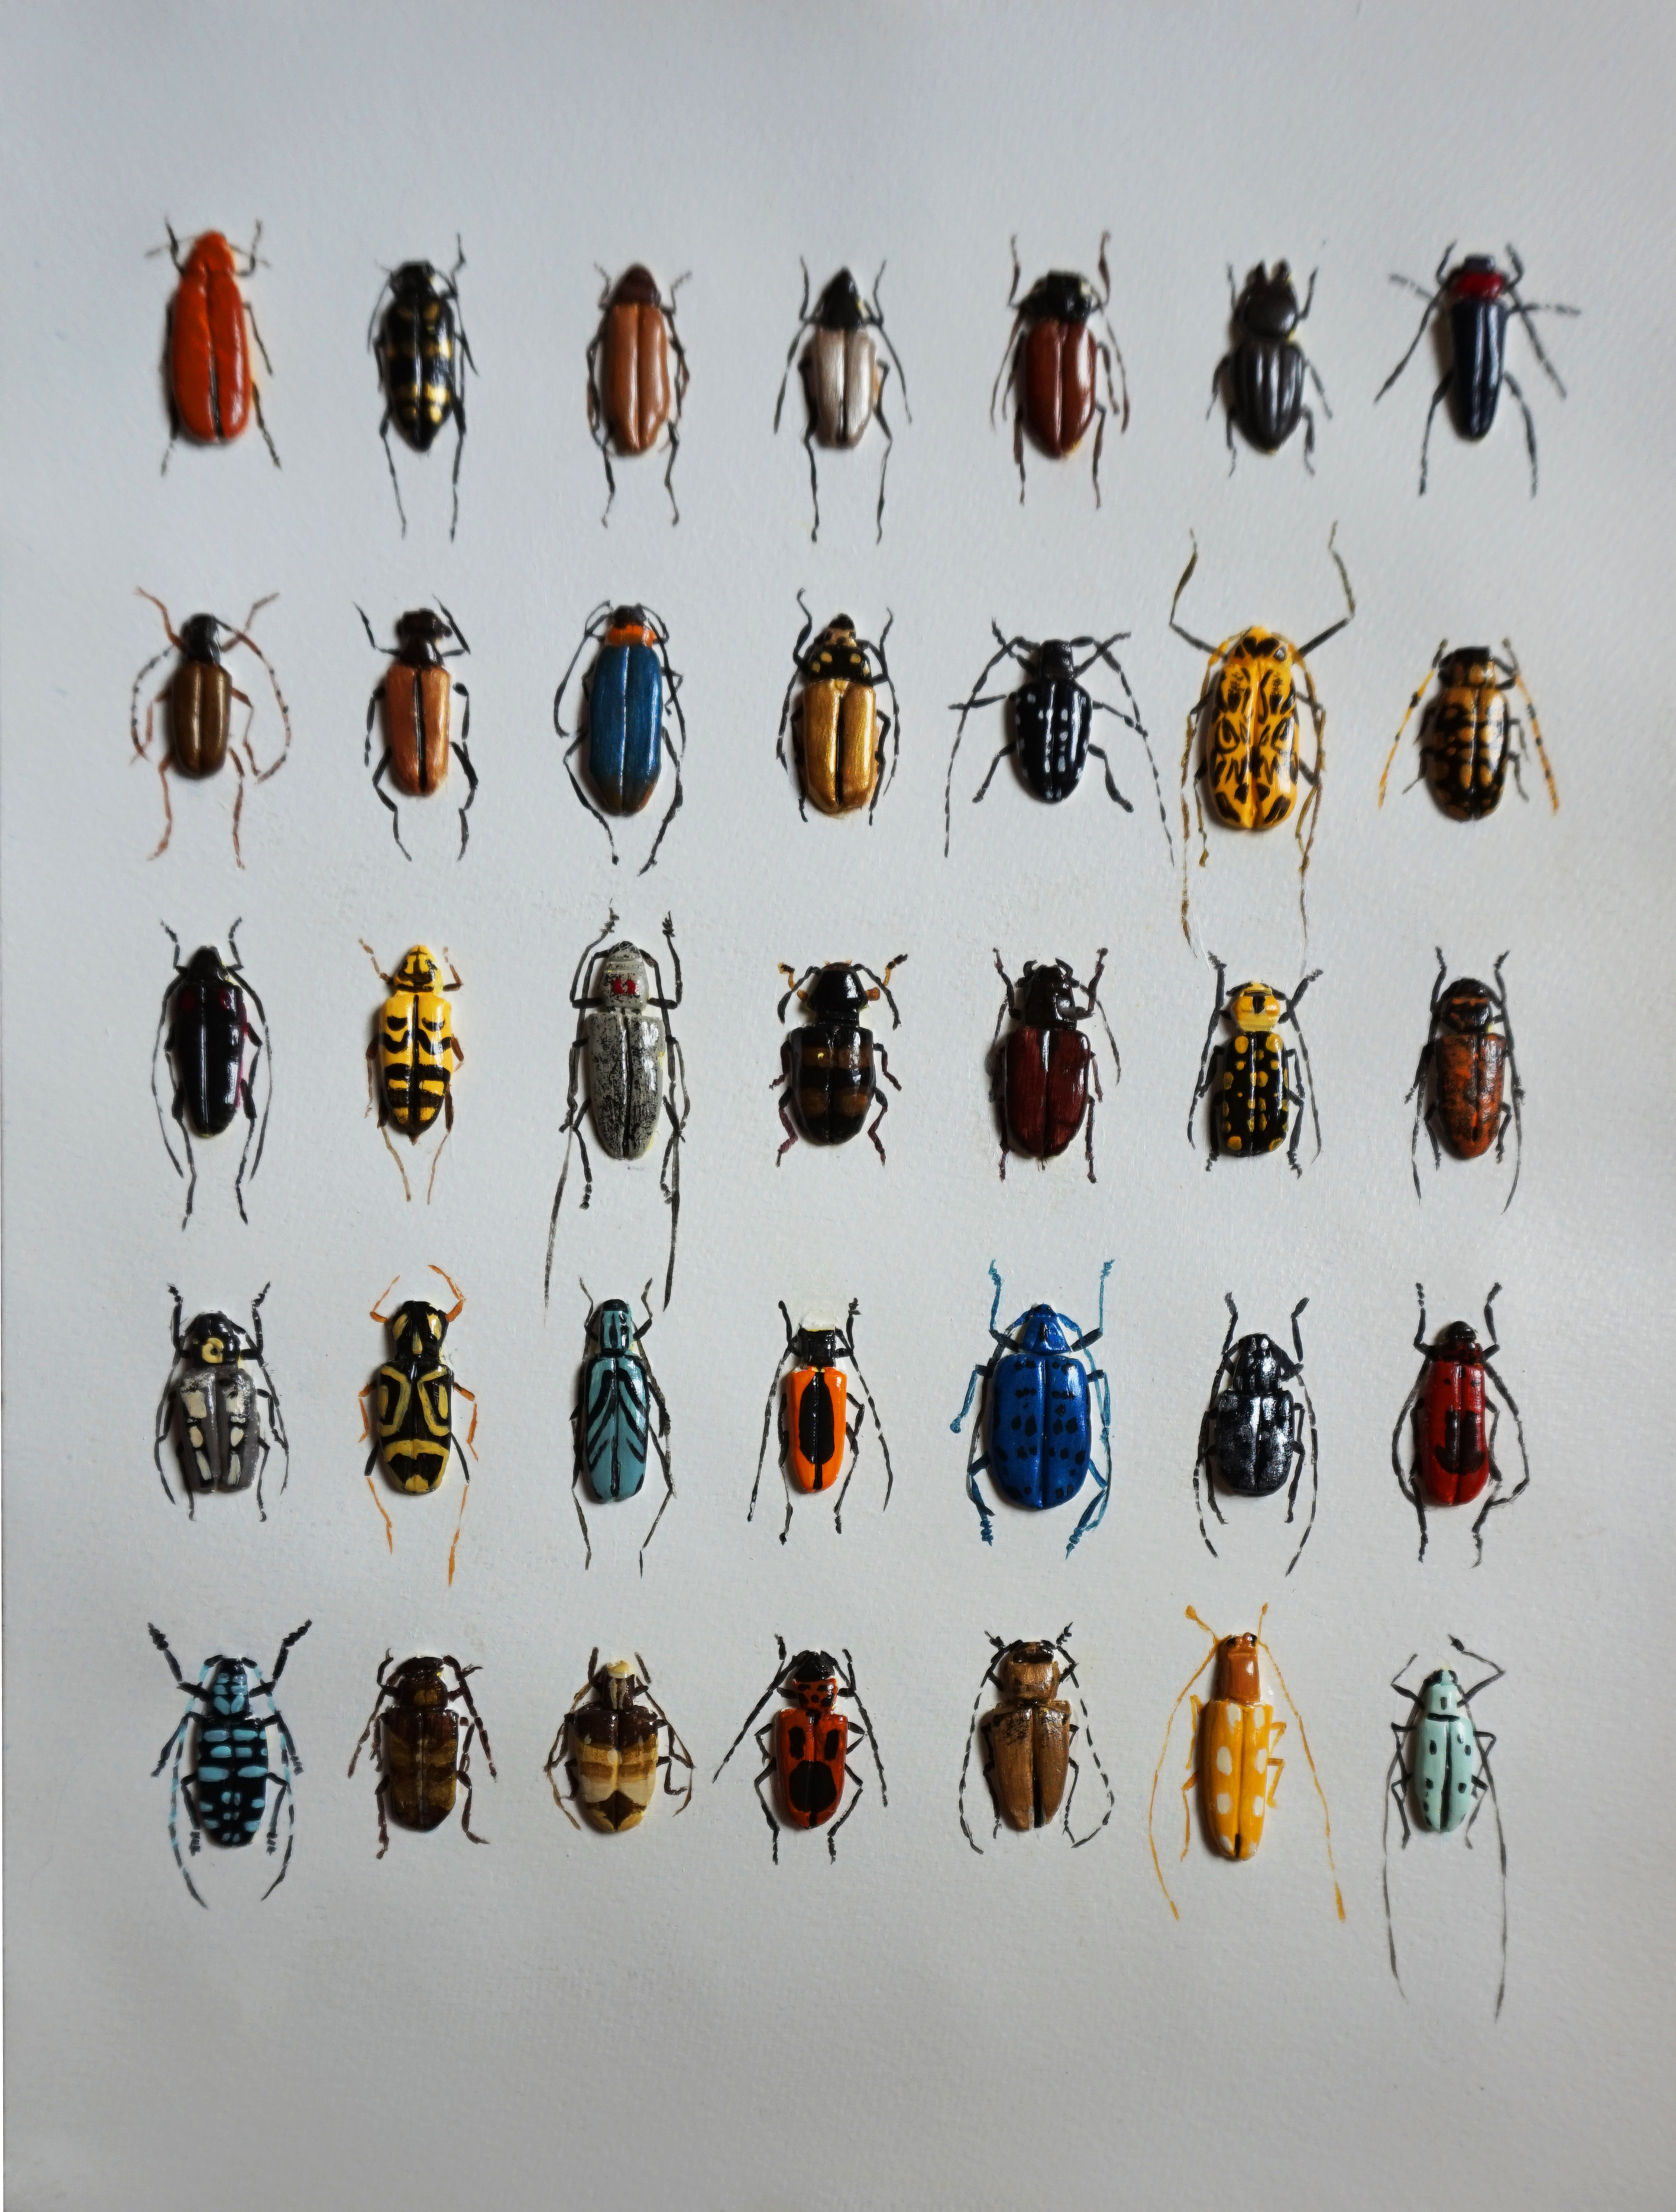 作品中昆虫种类很多,包括天牛,吉丁虫,锹甲,象甲,蜣螂等